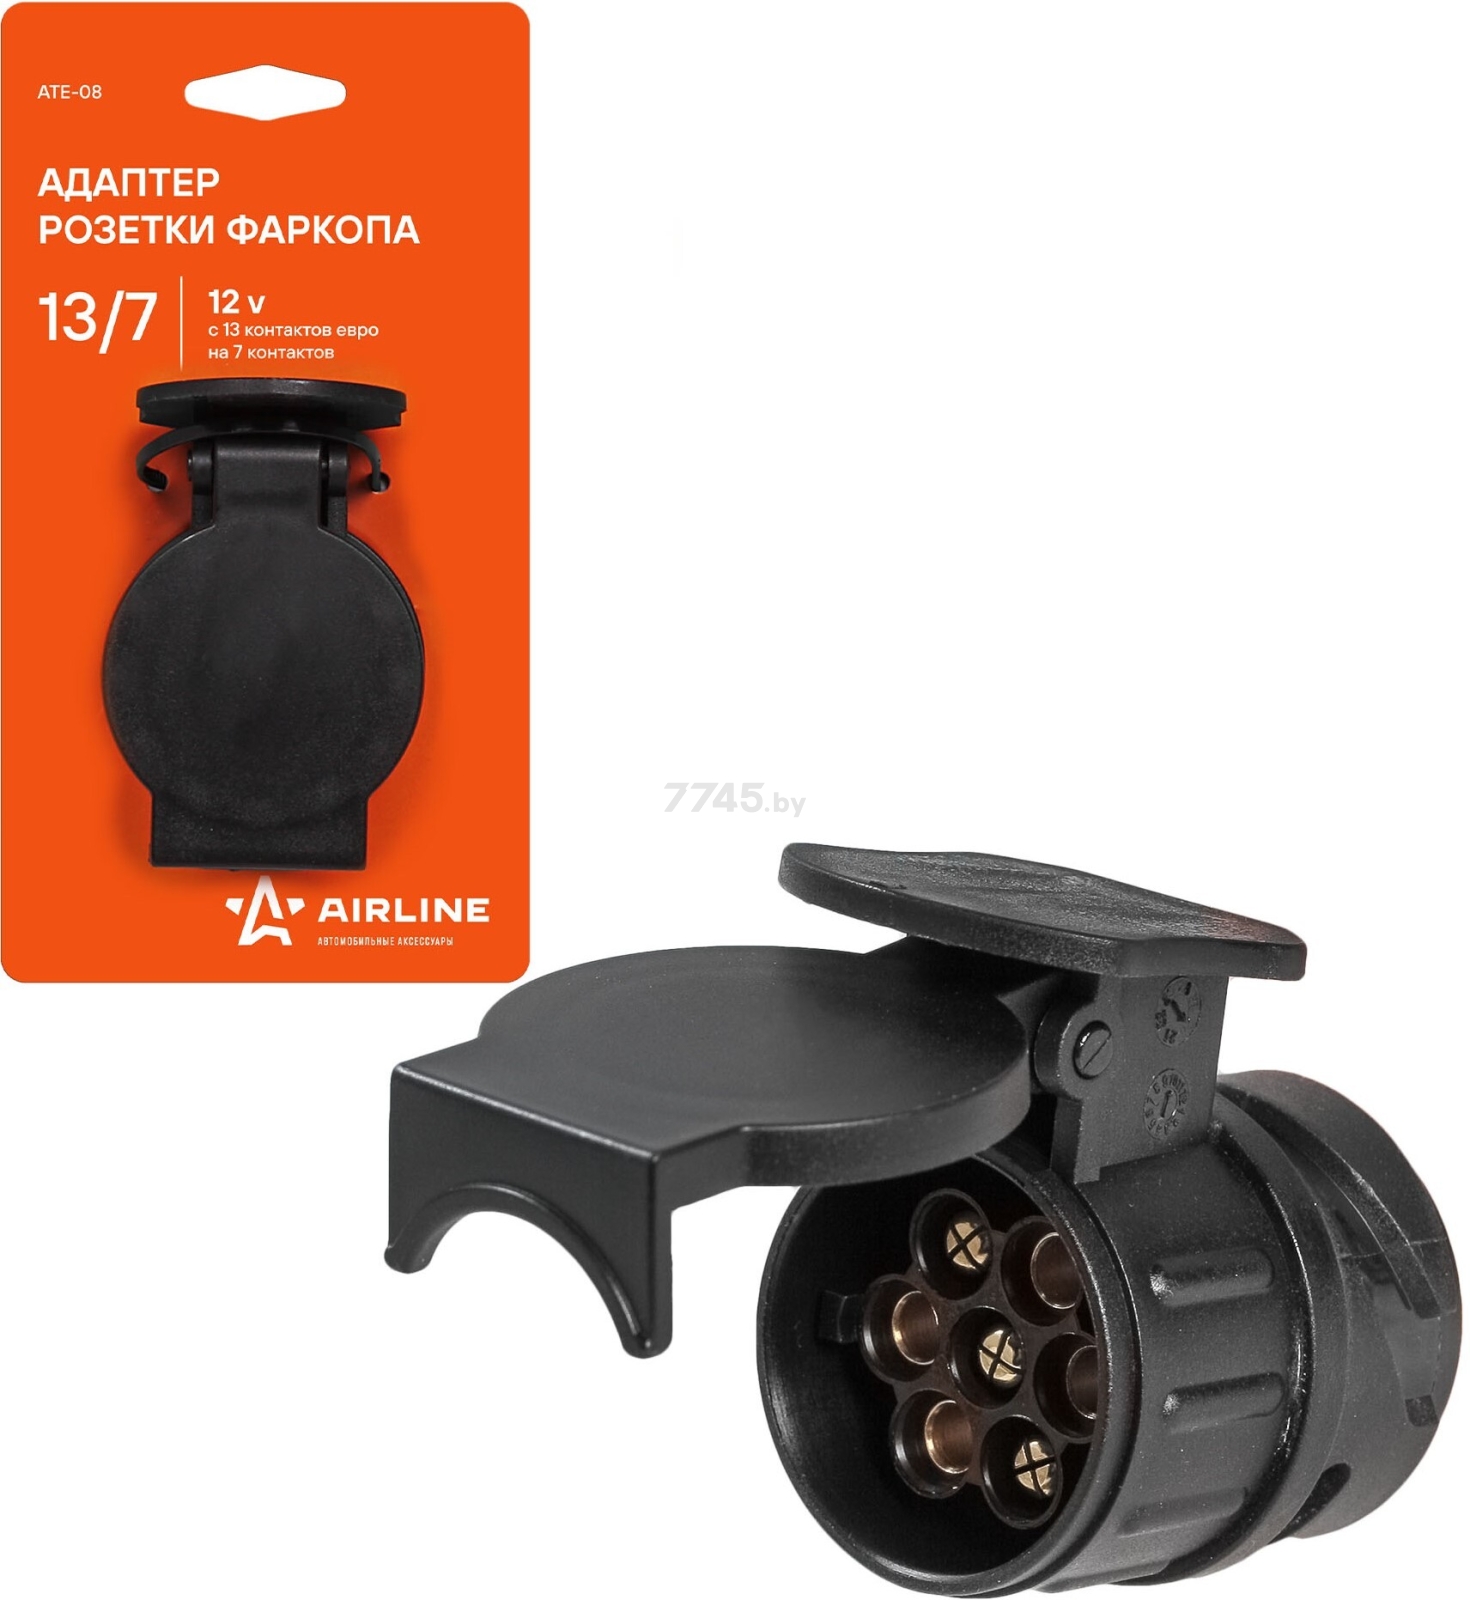 Адаптер розетки фаркопа с 13 евро на 7 контактов AIRLINE (ATE-08)